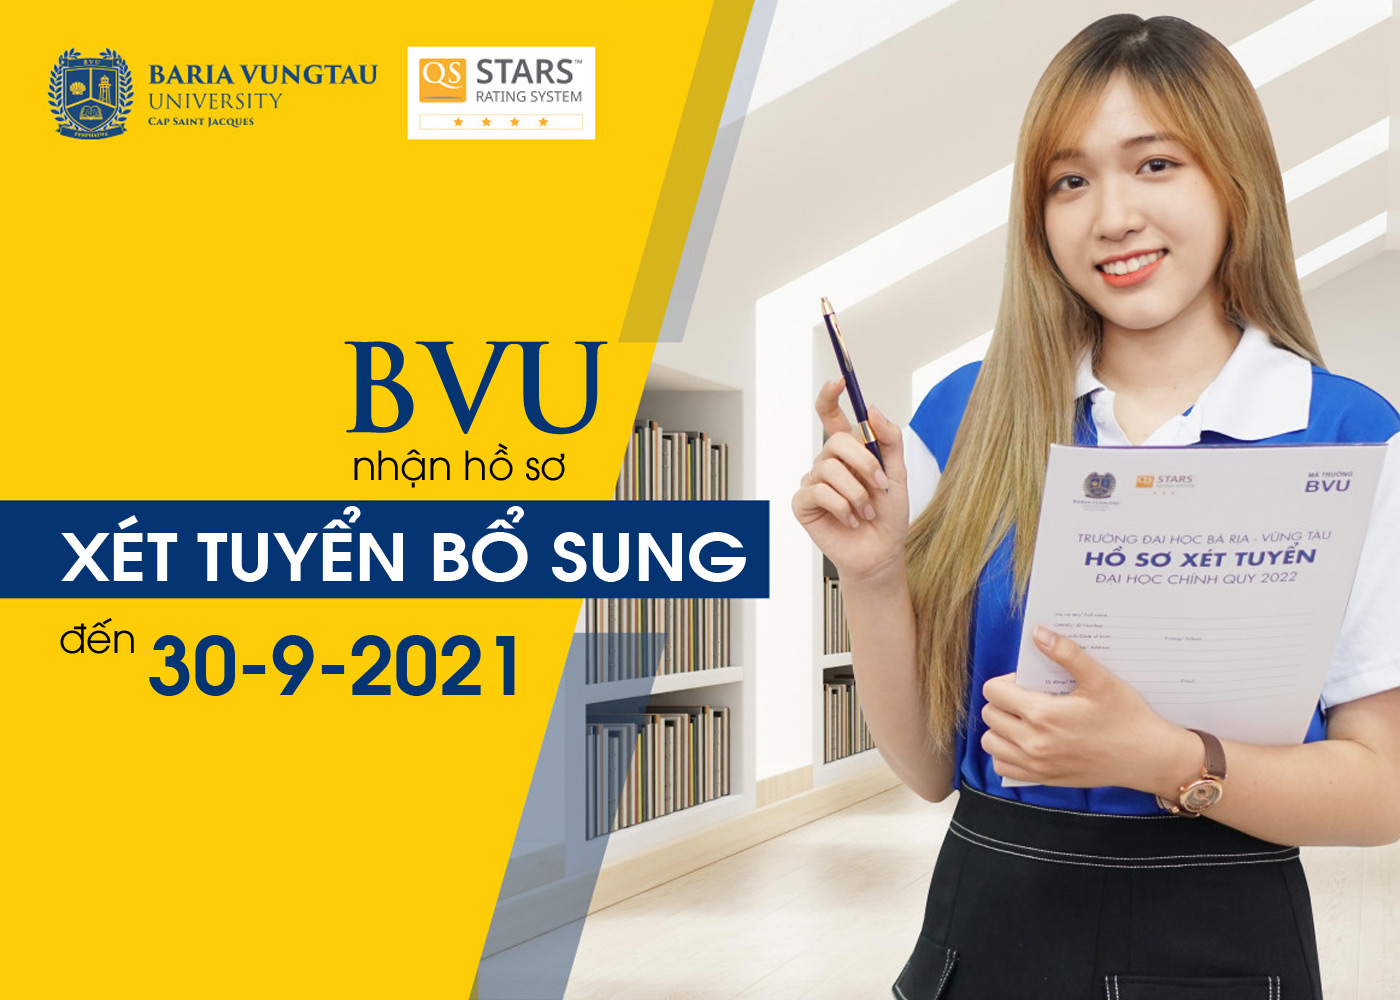 BVU nhận hồ sơ xét tuyển bổ sung đến 30-9-2021 - Ảnh 1